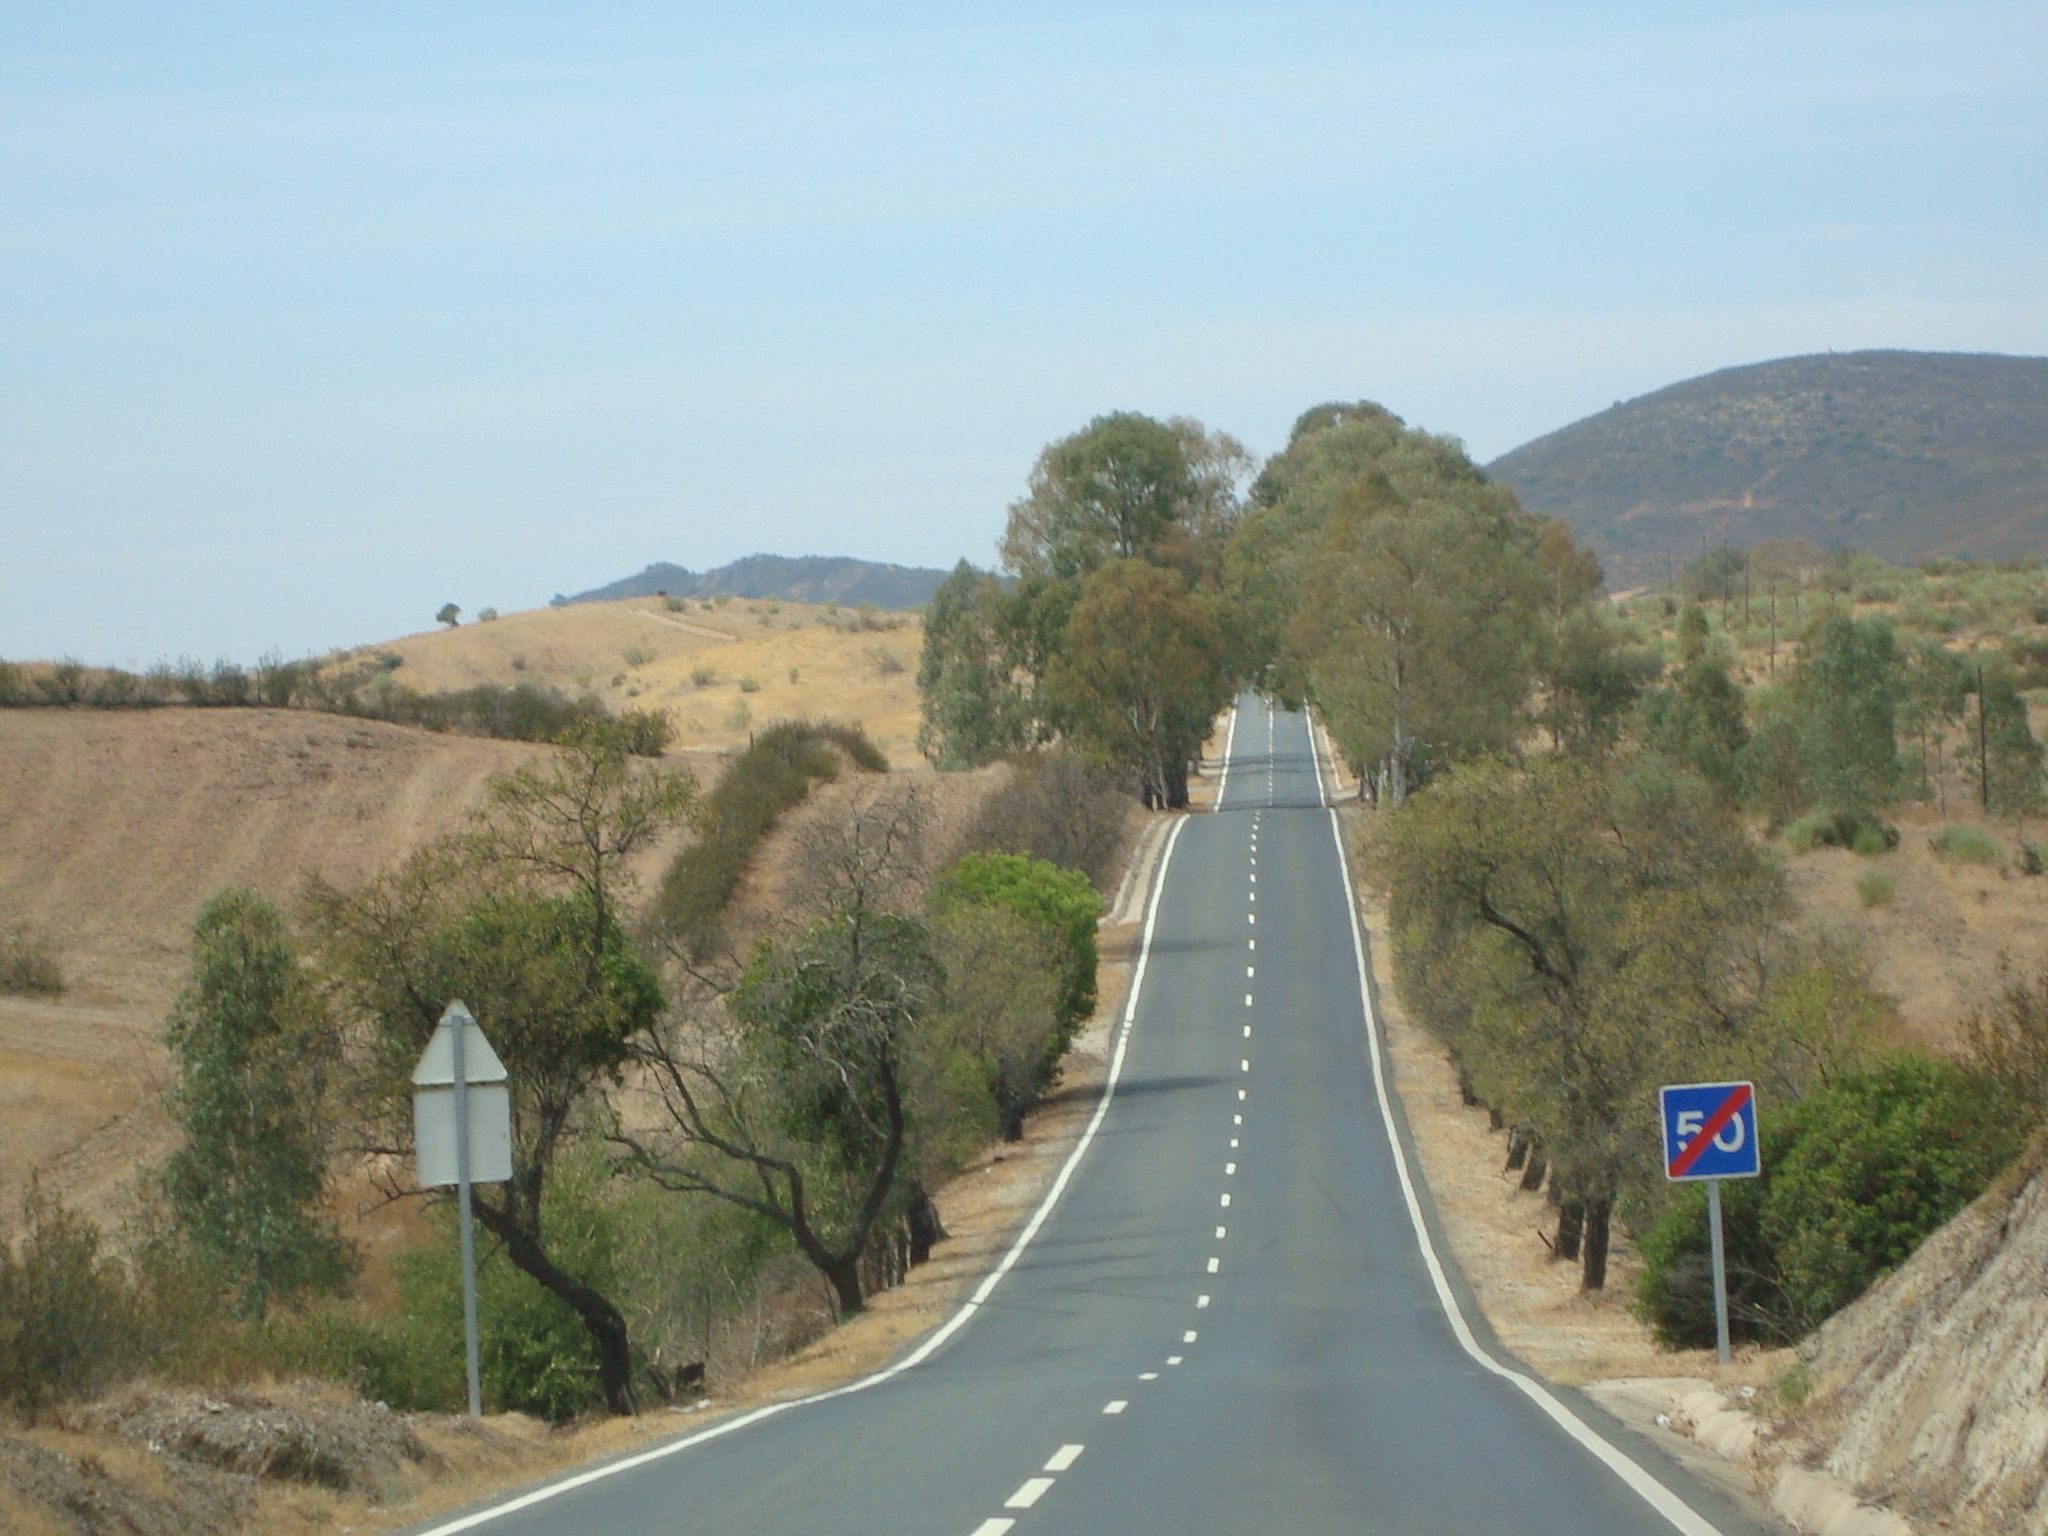 A road in alentejo seen in Public domain image from Wikipedia